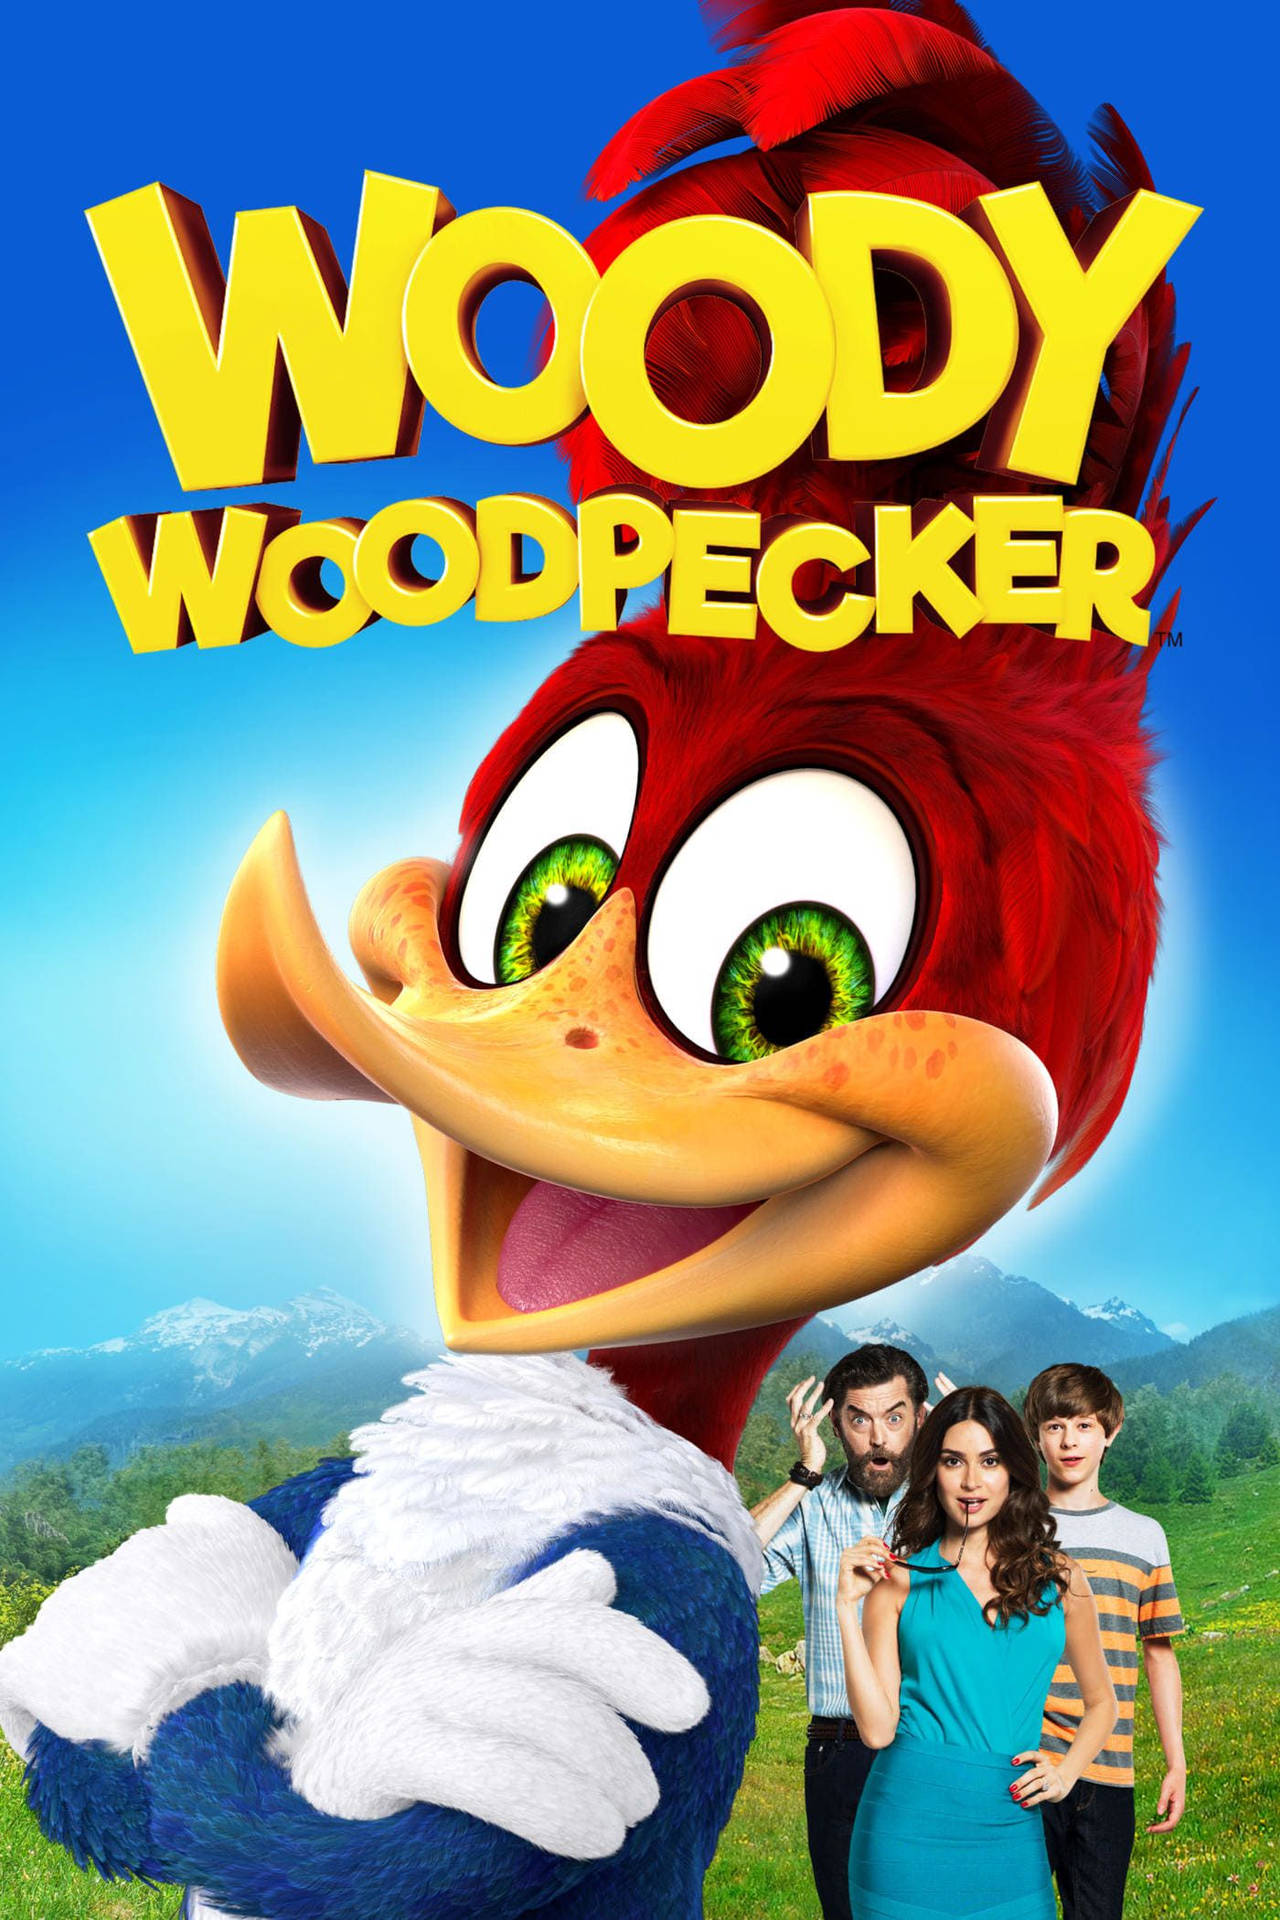 wild woody woodpecker